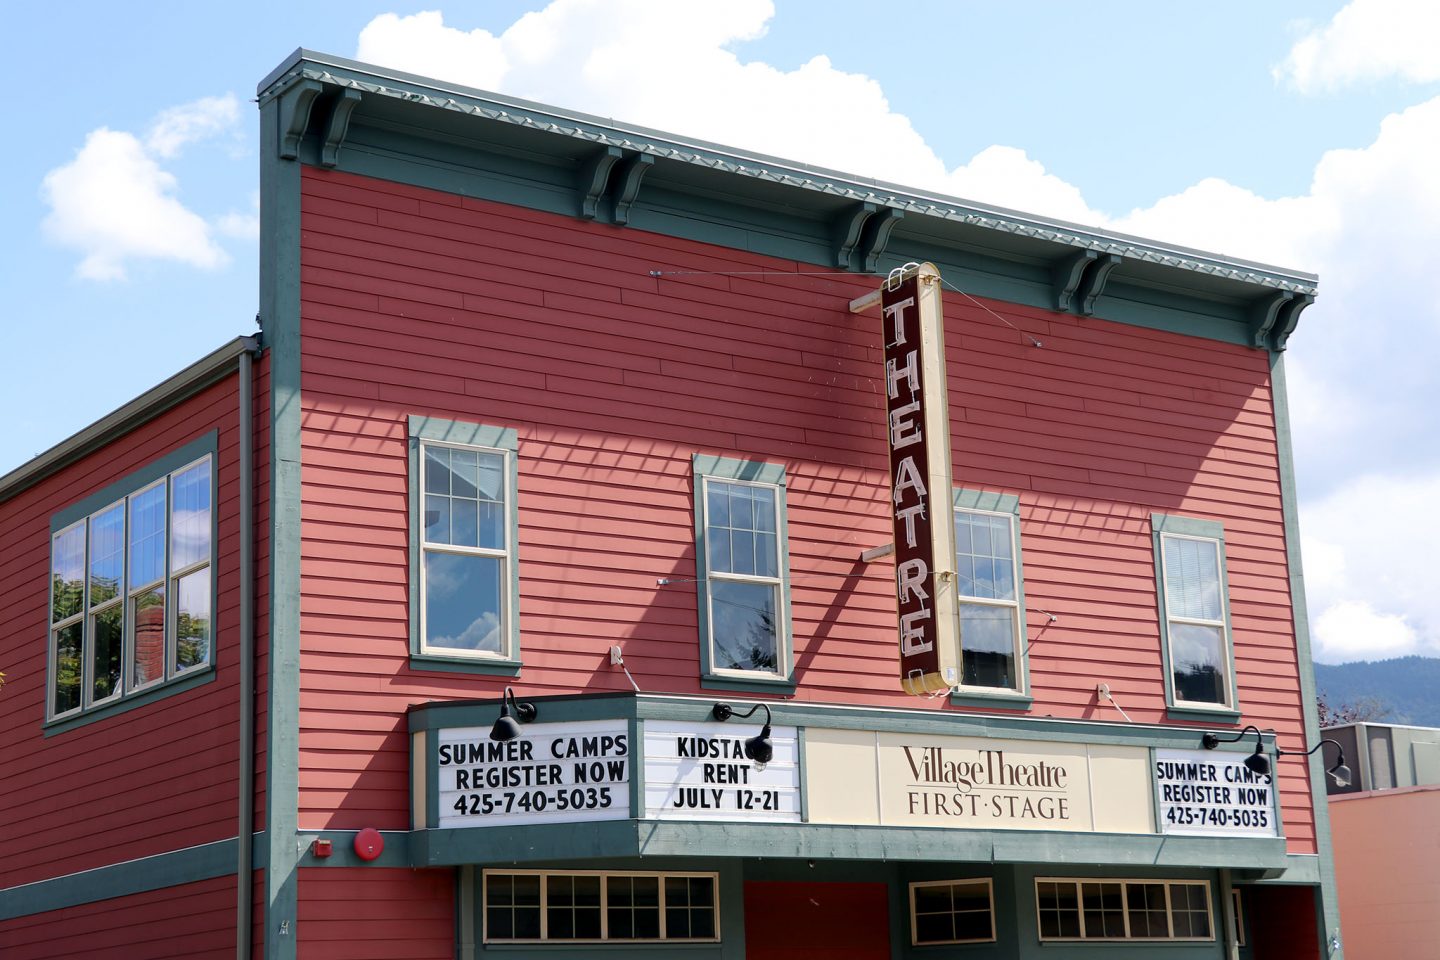 HistoryLink Tours — Village Theatre